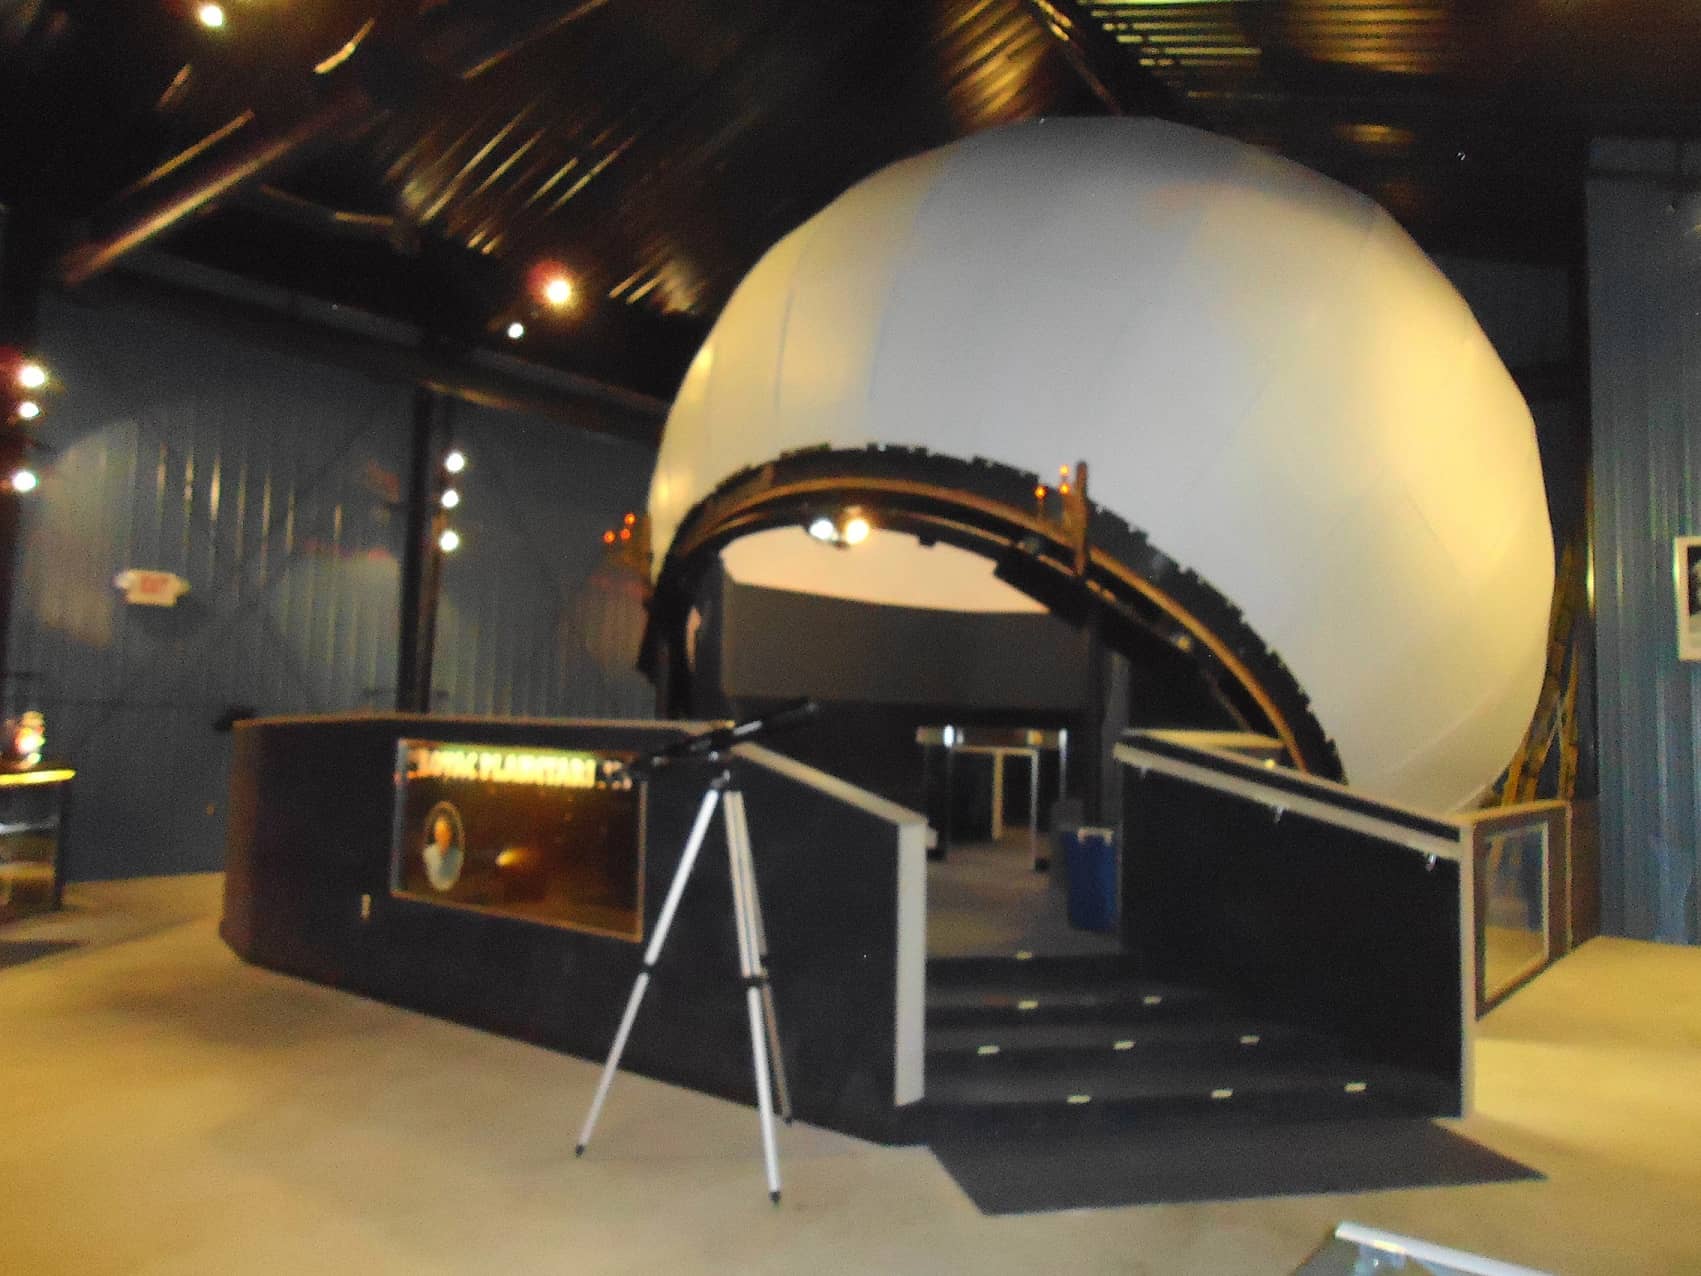 Planetarium 6 